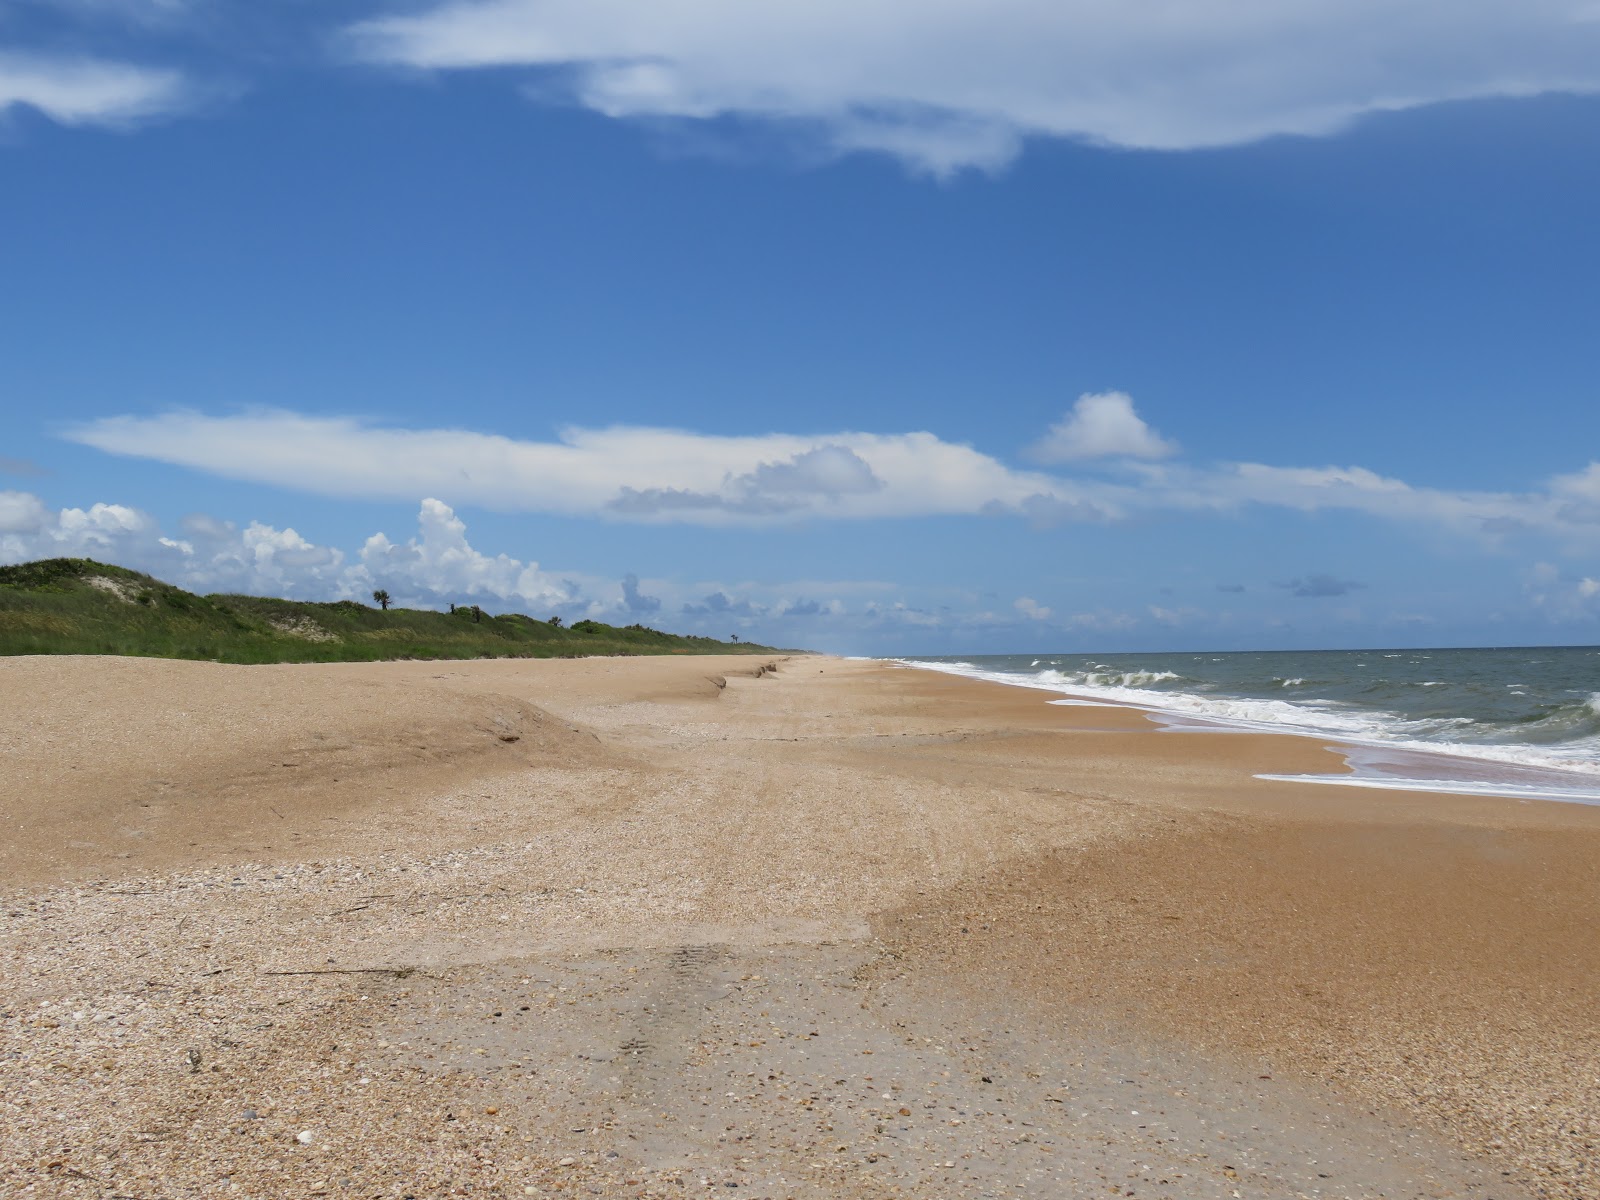 Photo de Guana Reserve beach - endroit populaire parmi les connaisseurs de la détente